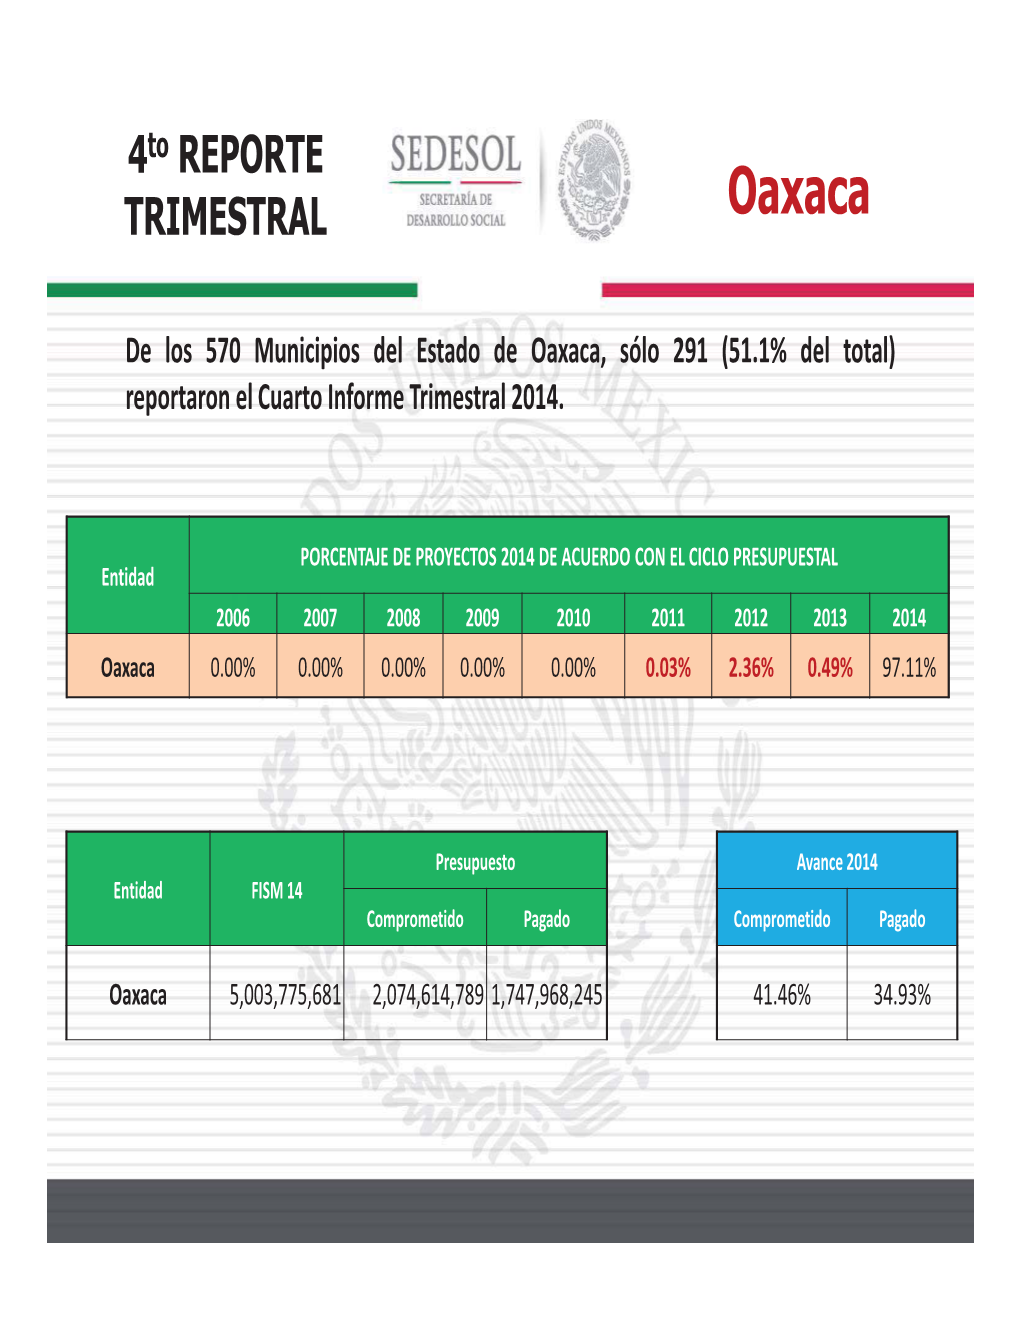 De Los 570 Municipios Del Estado De Oaxaca, Sólo 291 (51.1% Del Total) Reportaron El Cuarto Informe Trimestral 2014